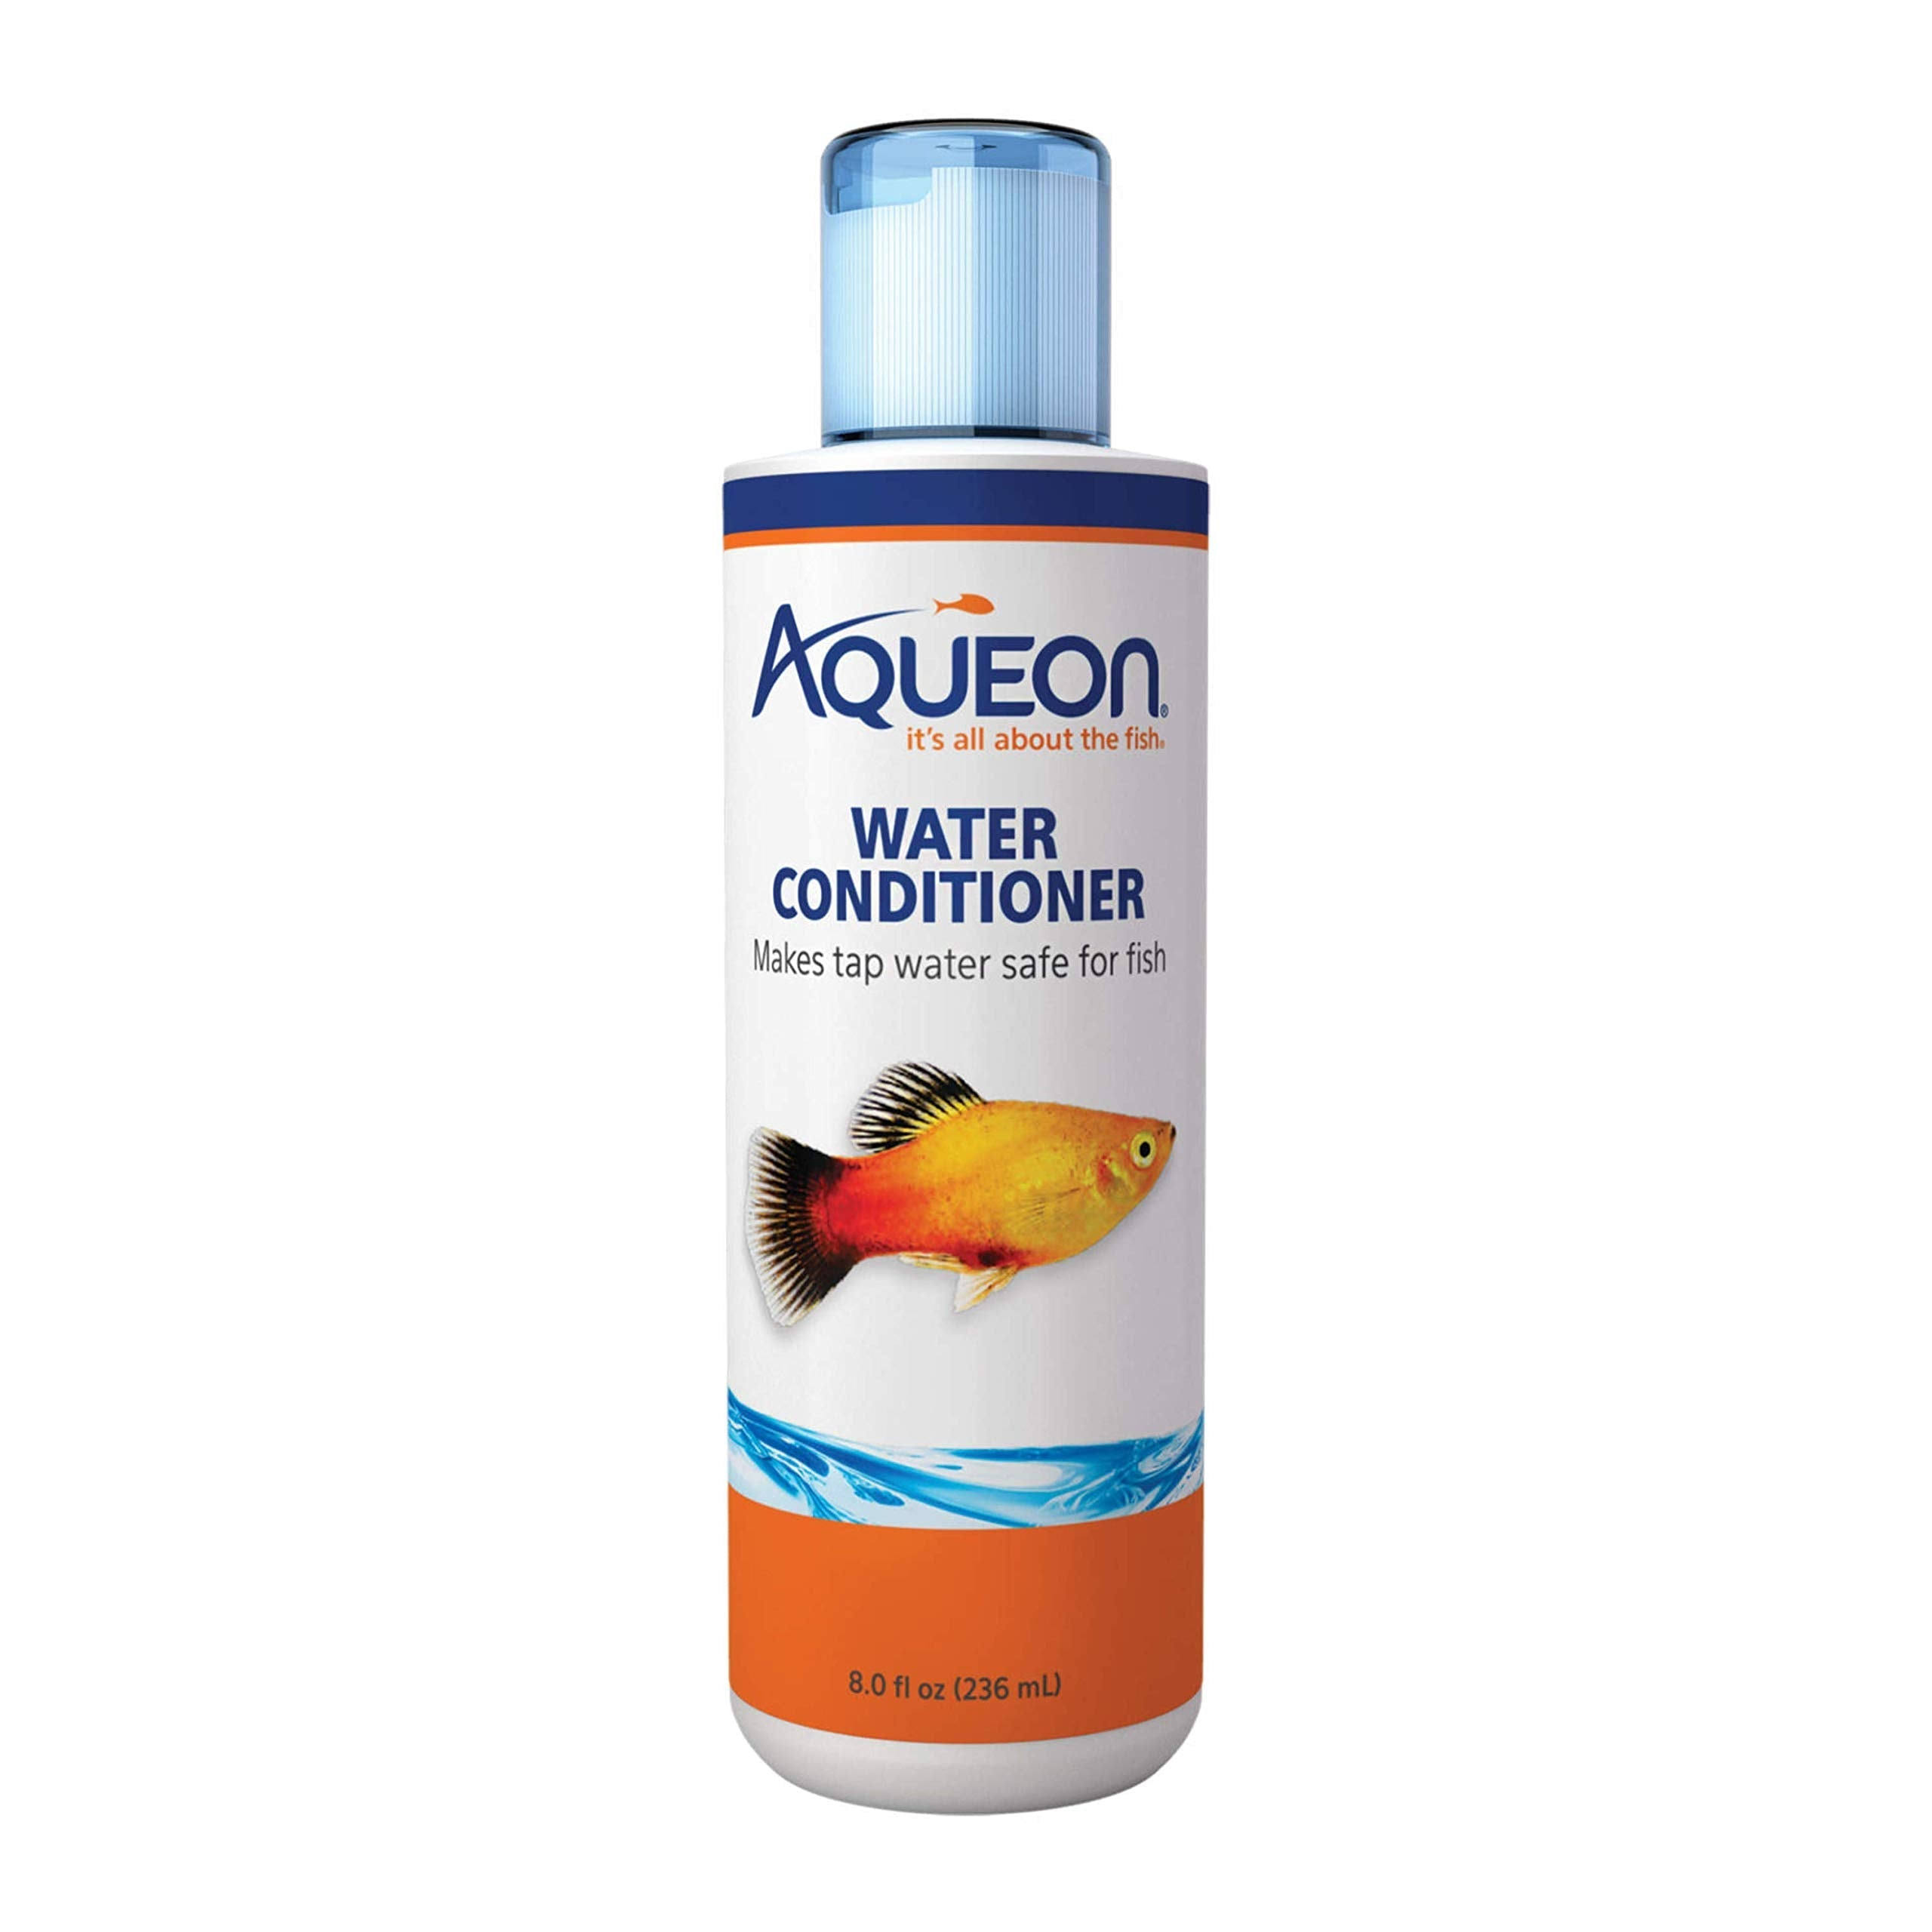 Aqueon Water Conditioner - 236ml